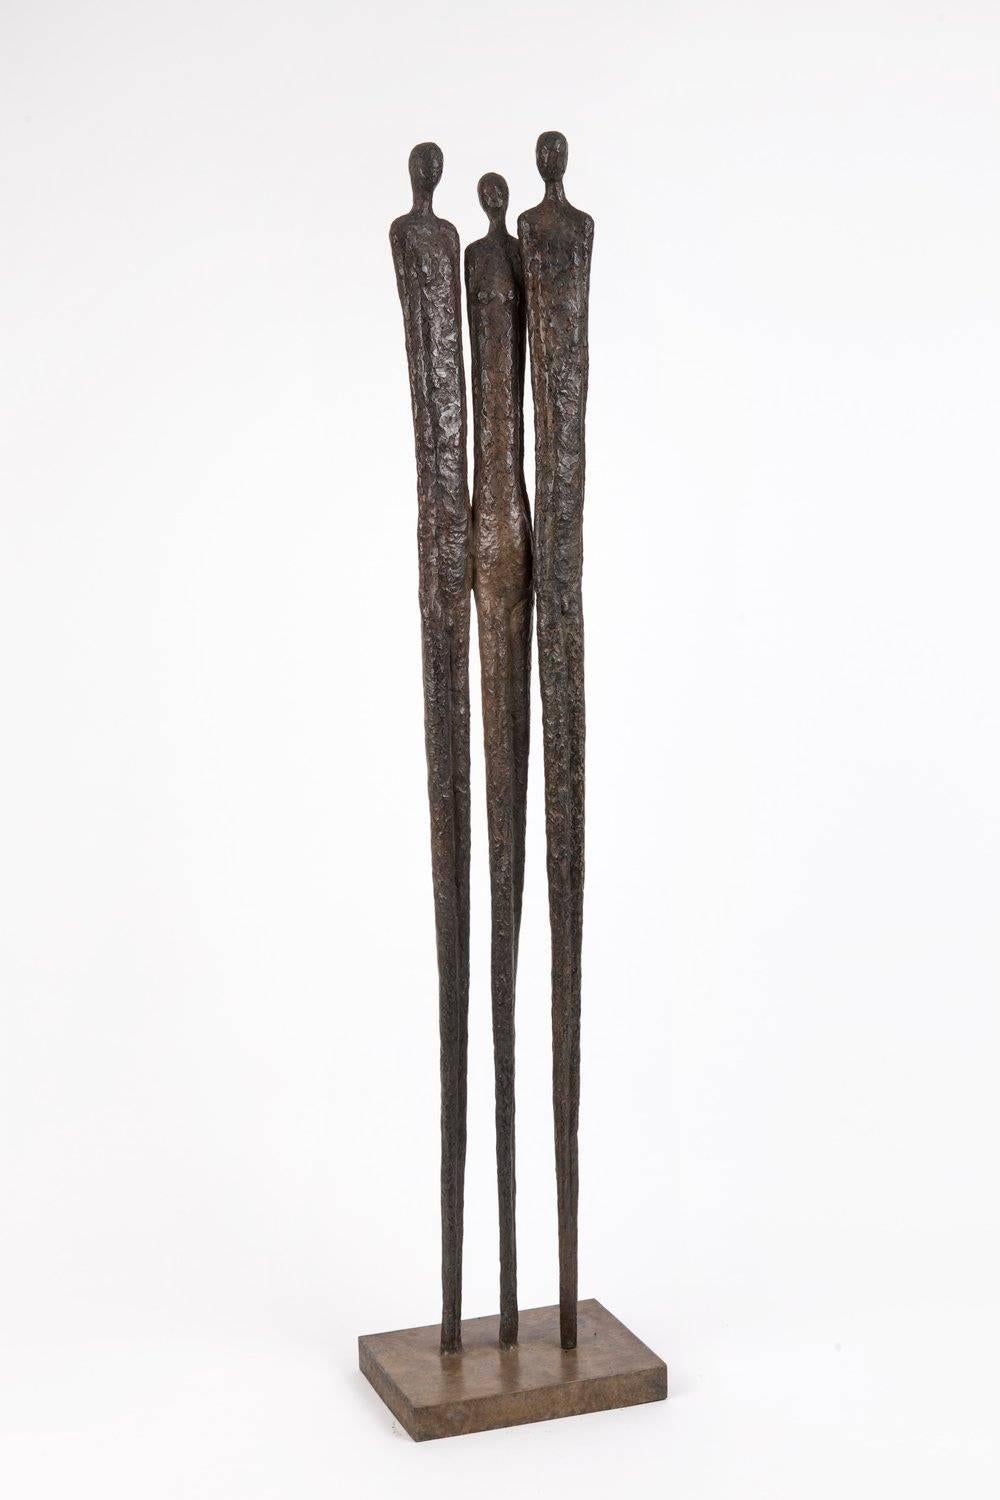 Chantal Lacout Abstract Sculpture - Jeanne Jules et Jim, bronze sculpture